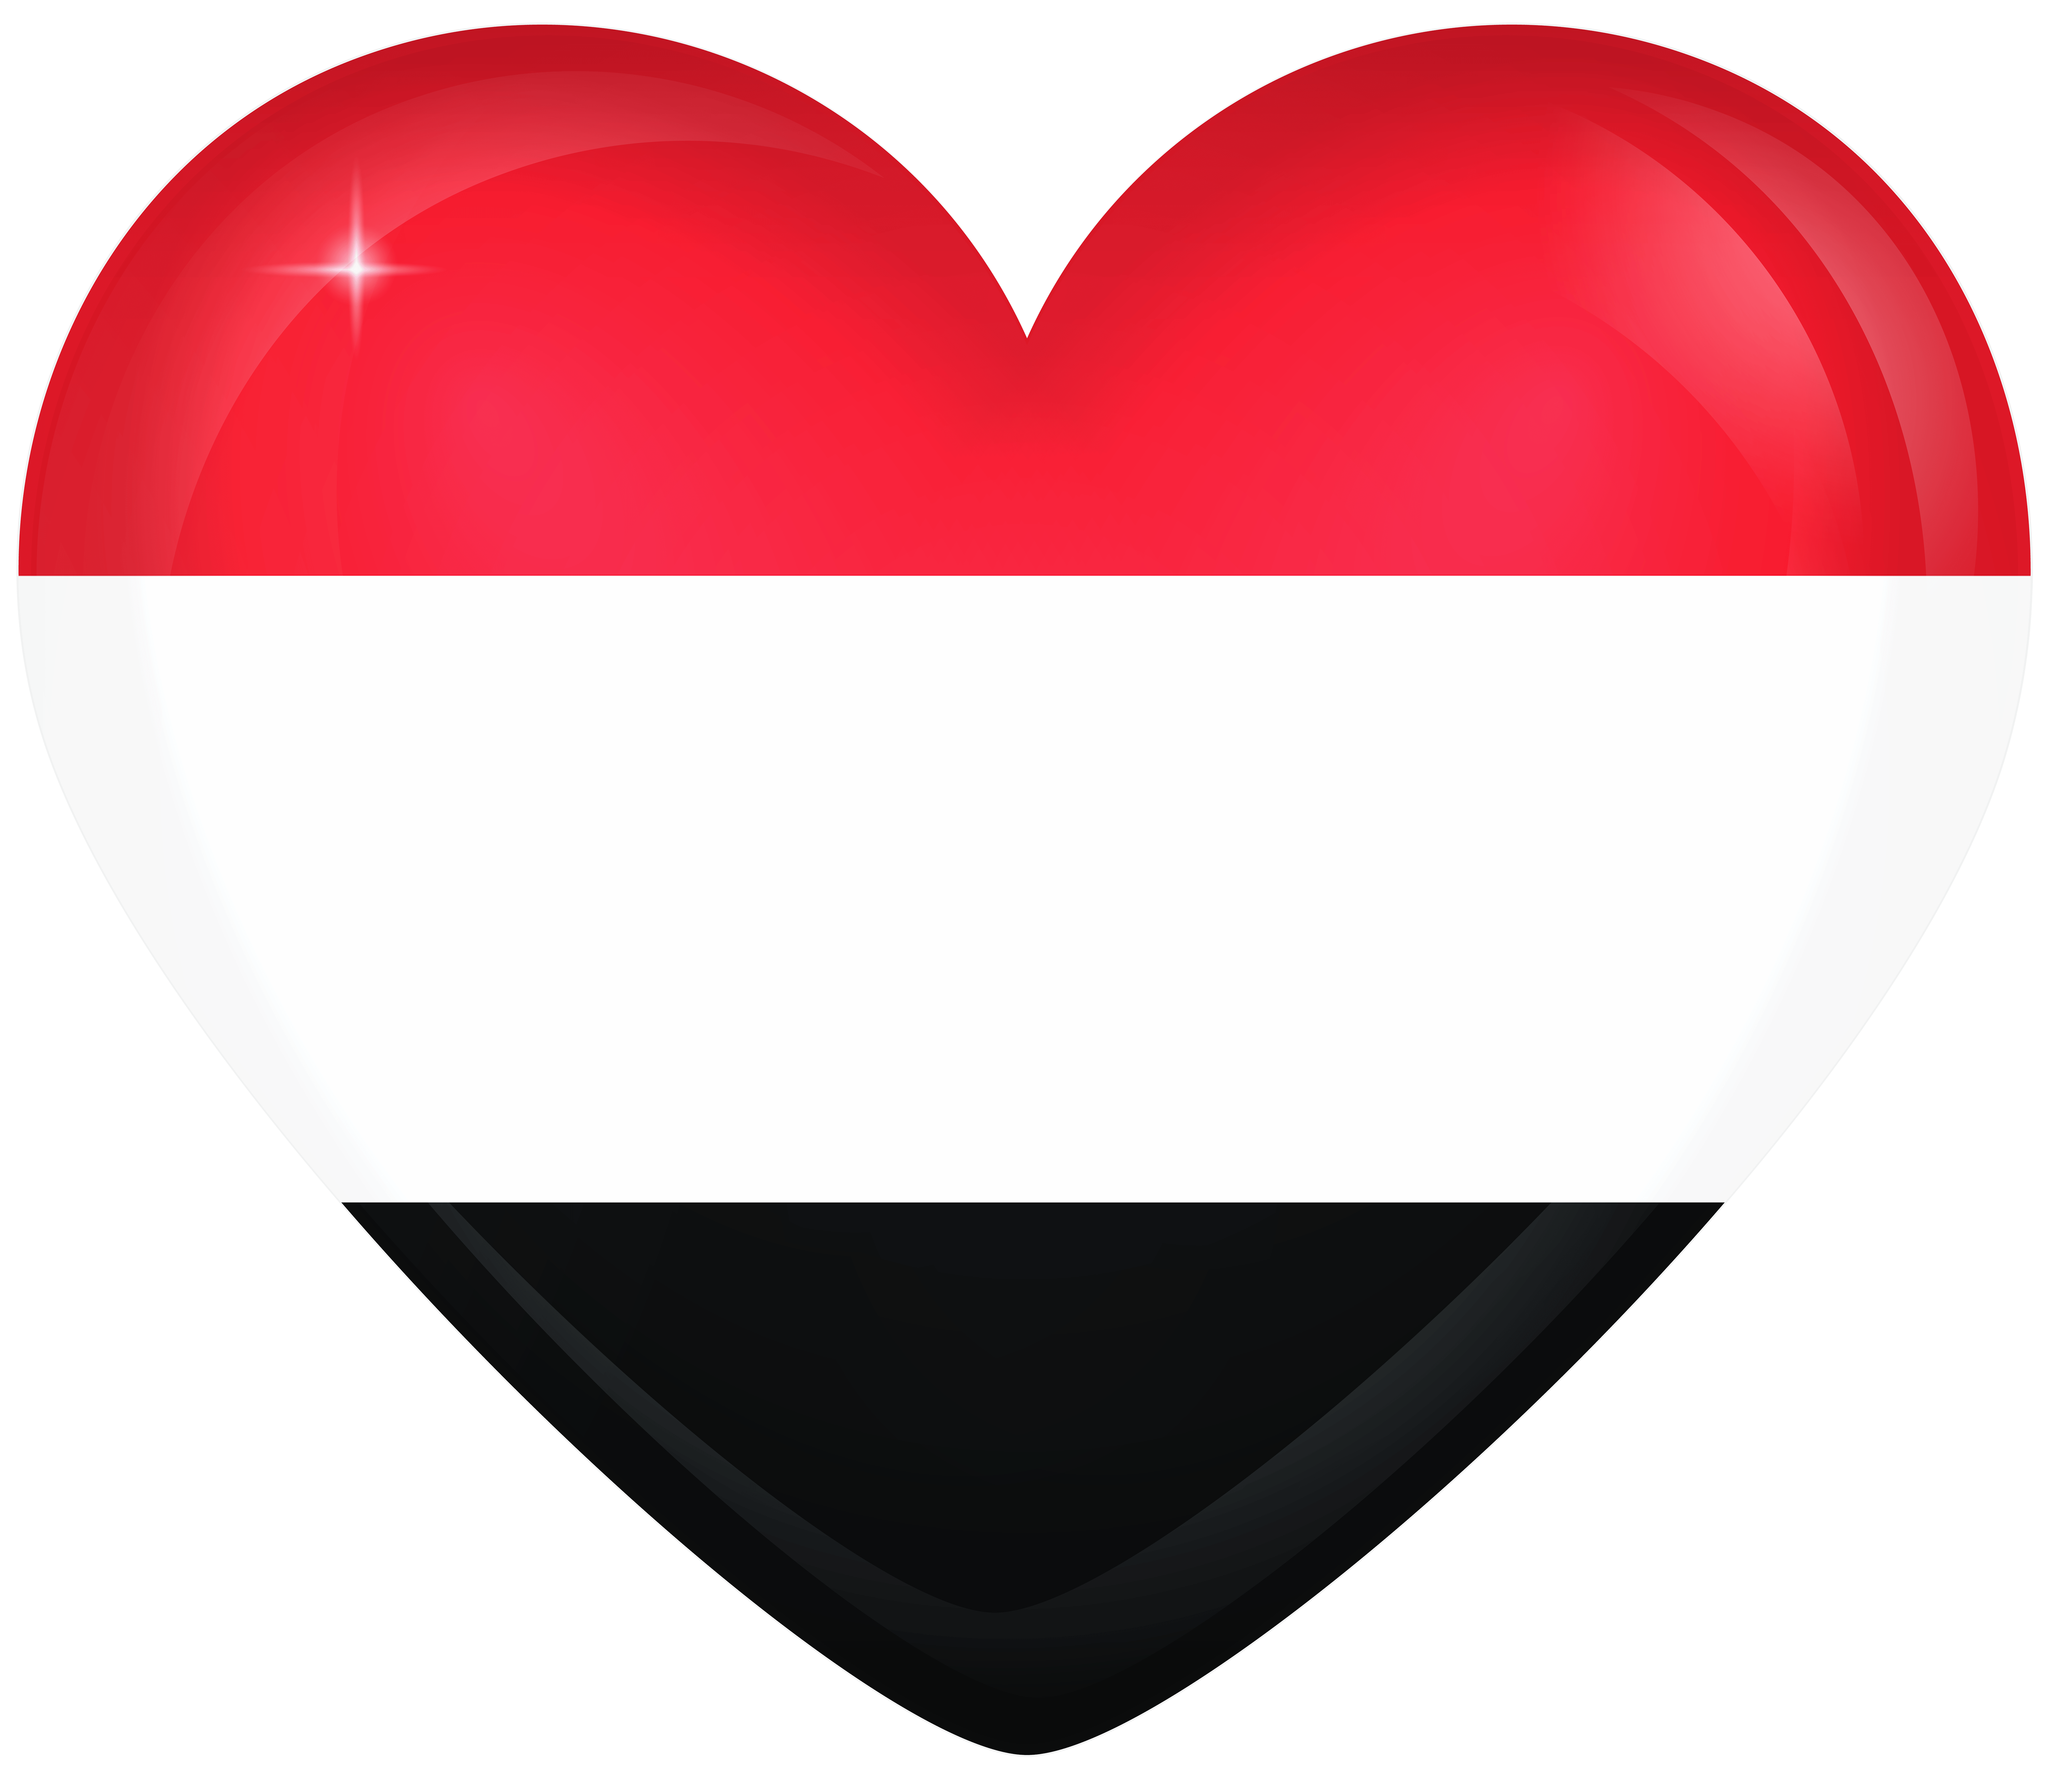 Yemen Large Heart Flag Quality Image